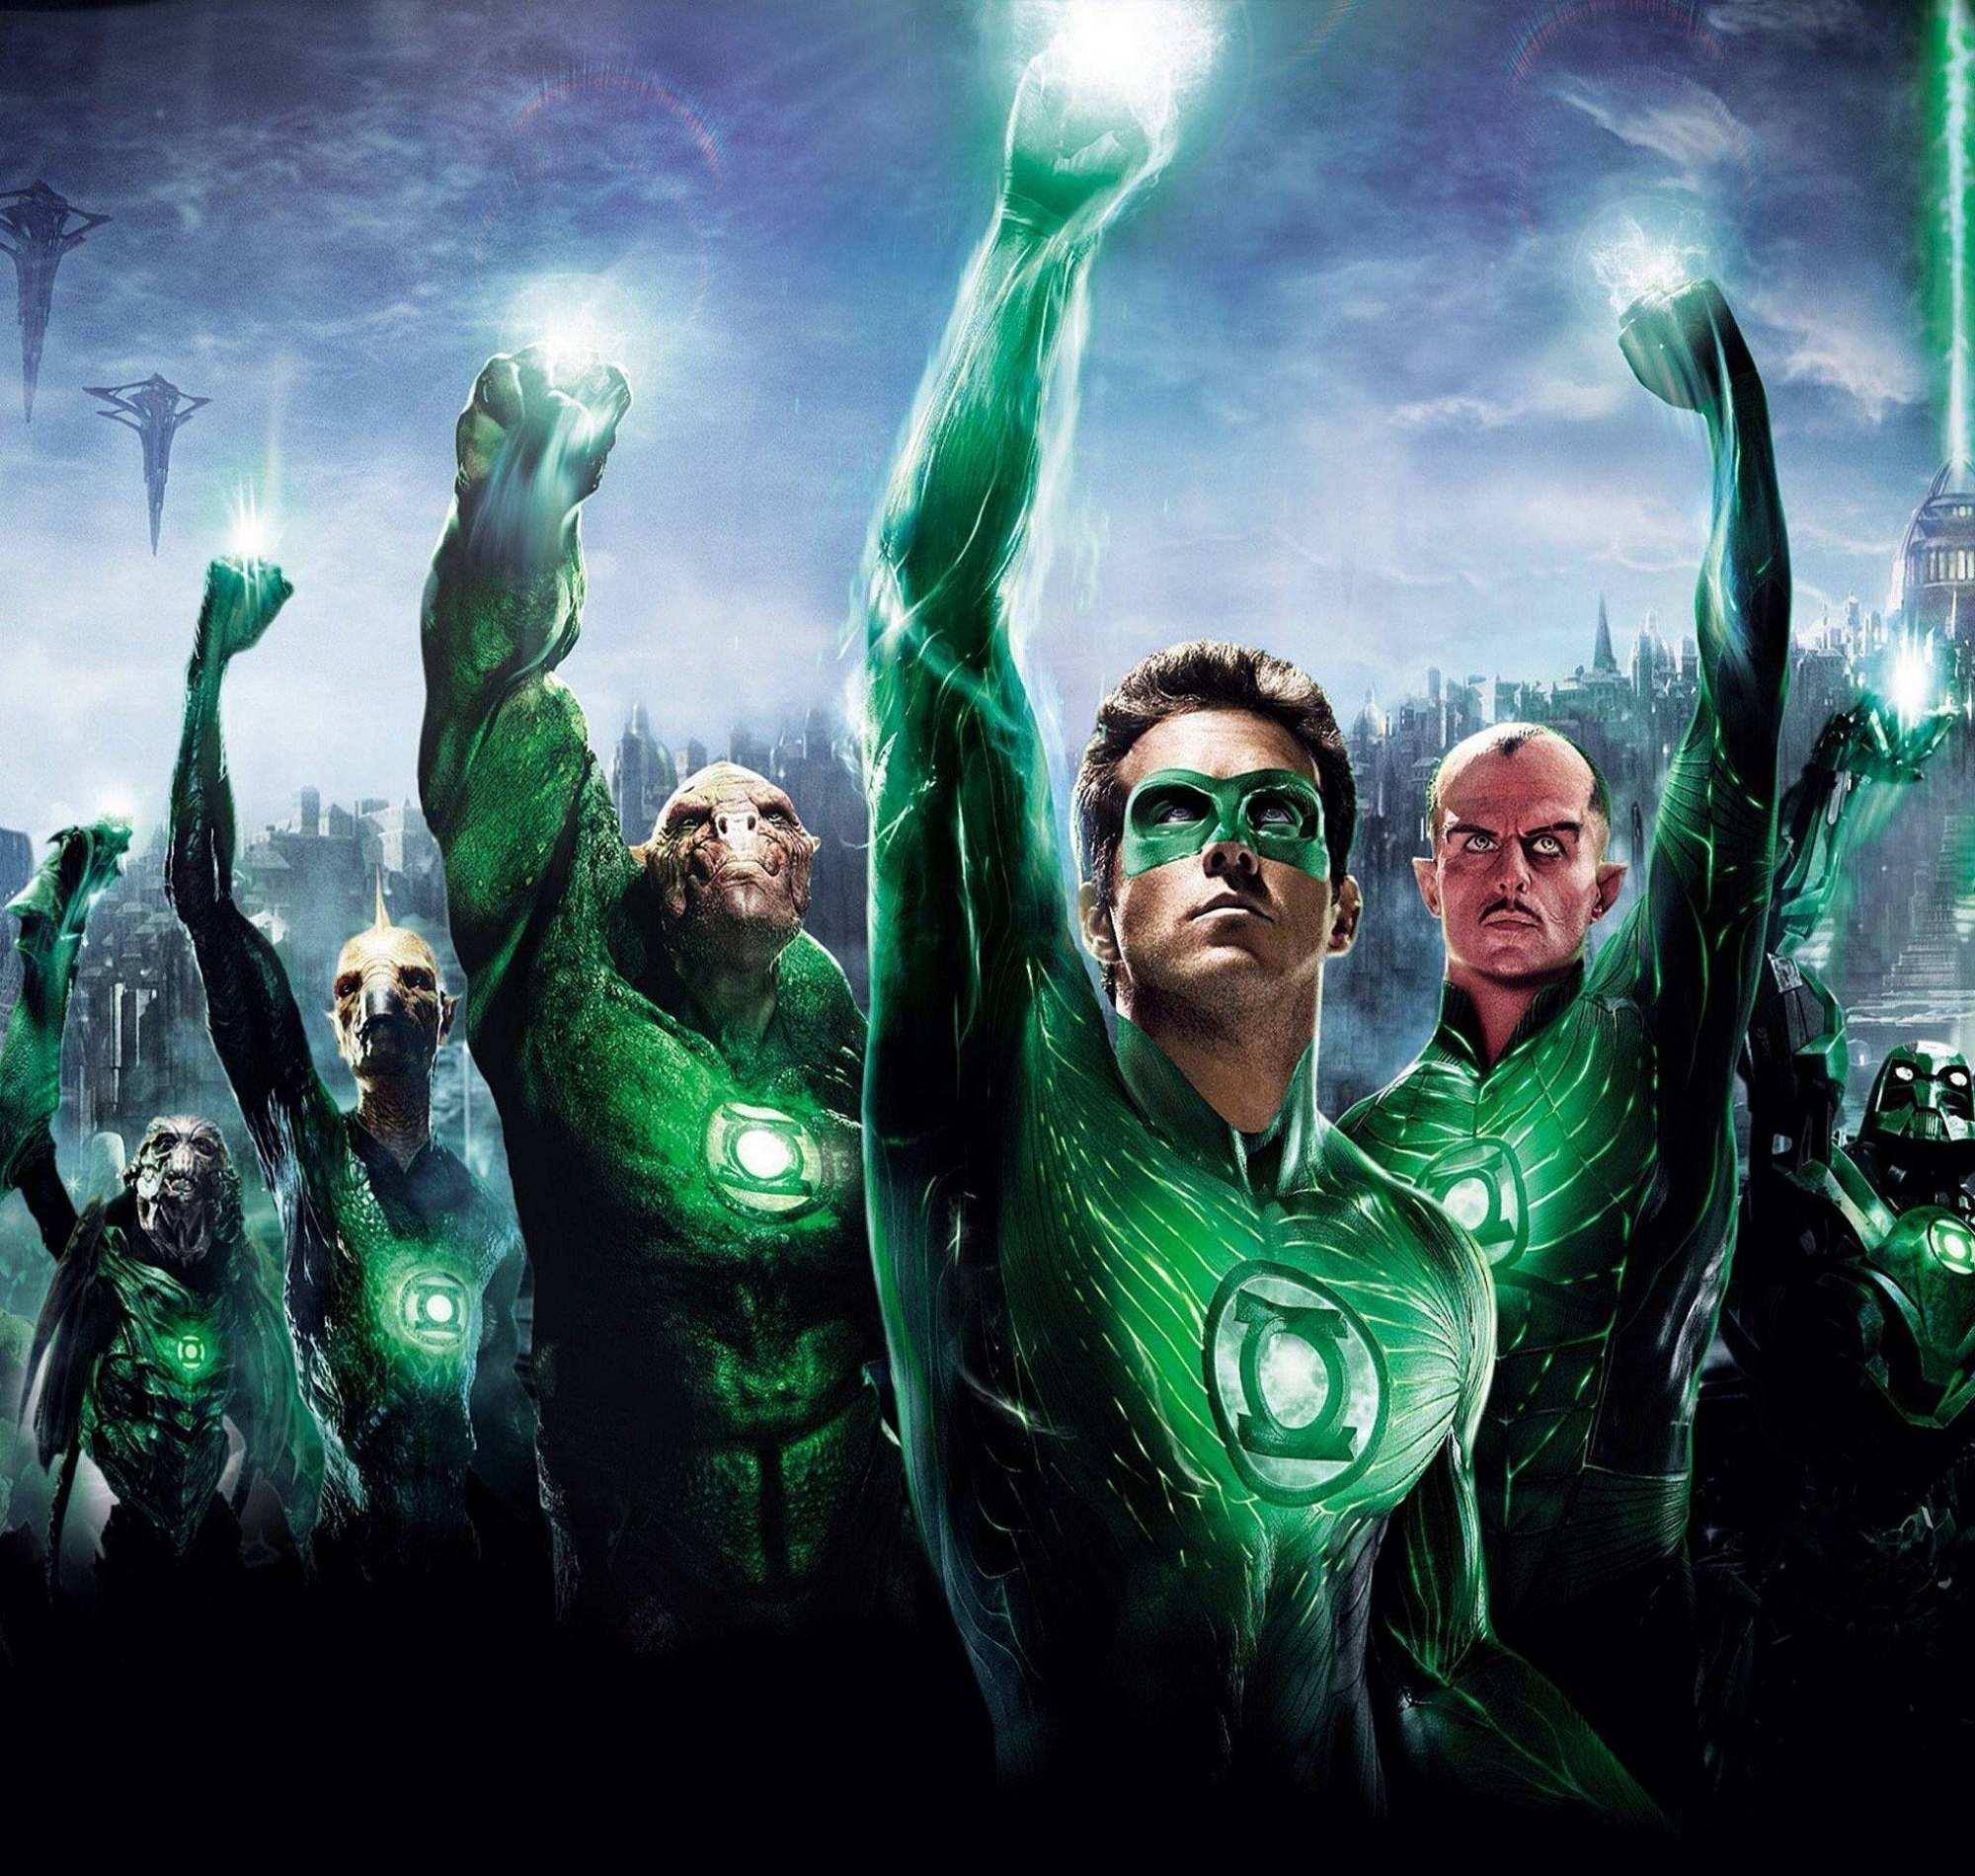 当然还有人提议,绿灯侠能引出整个绿灯军团甚至七灯军团,也是家族形态